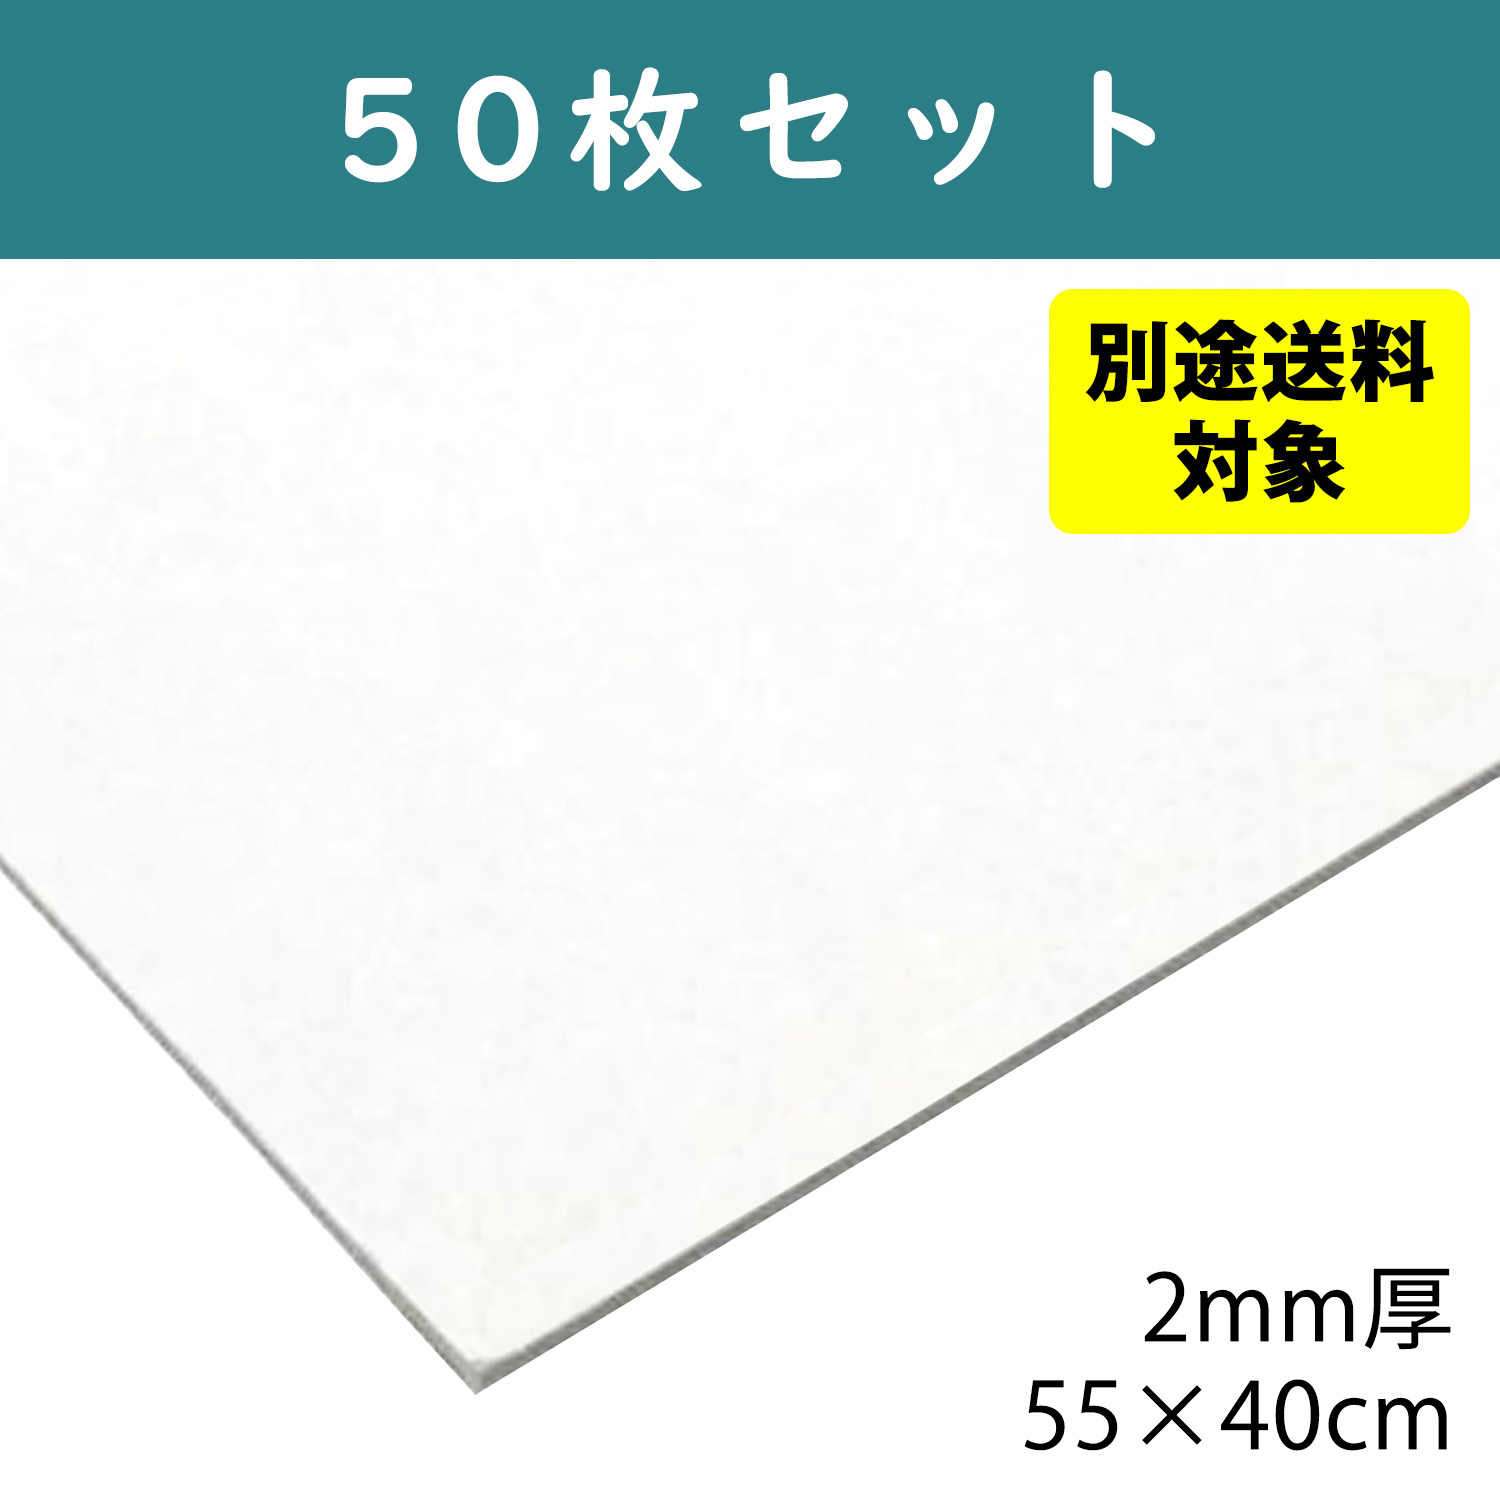 【+別途送料対象商品】CTN7-50 白厚紙 2mm厚 55×40cm 50枚入 (袋)